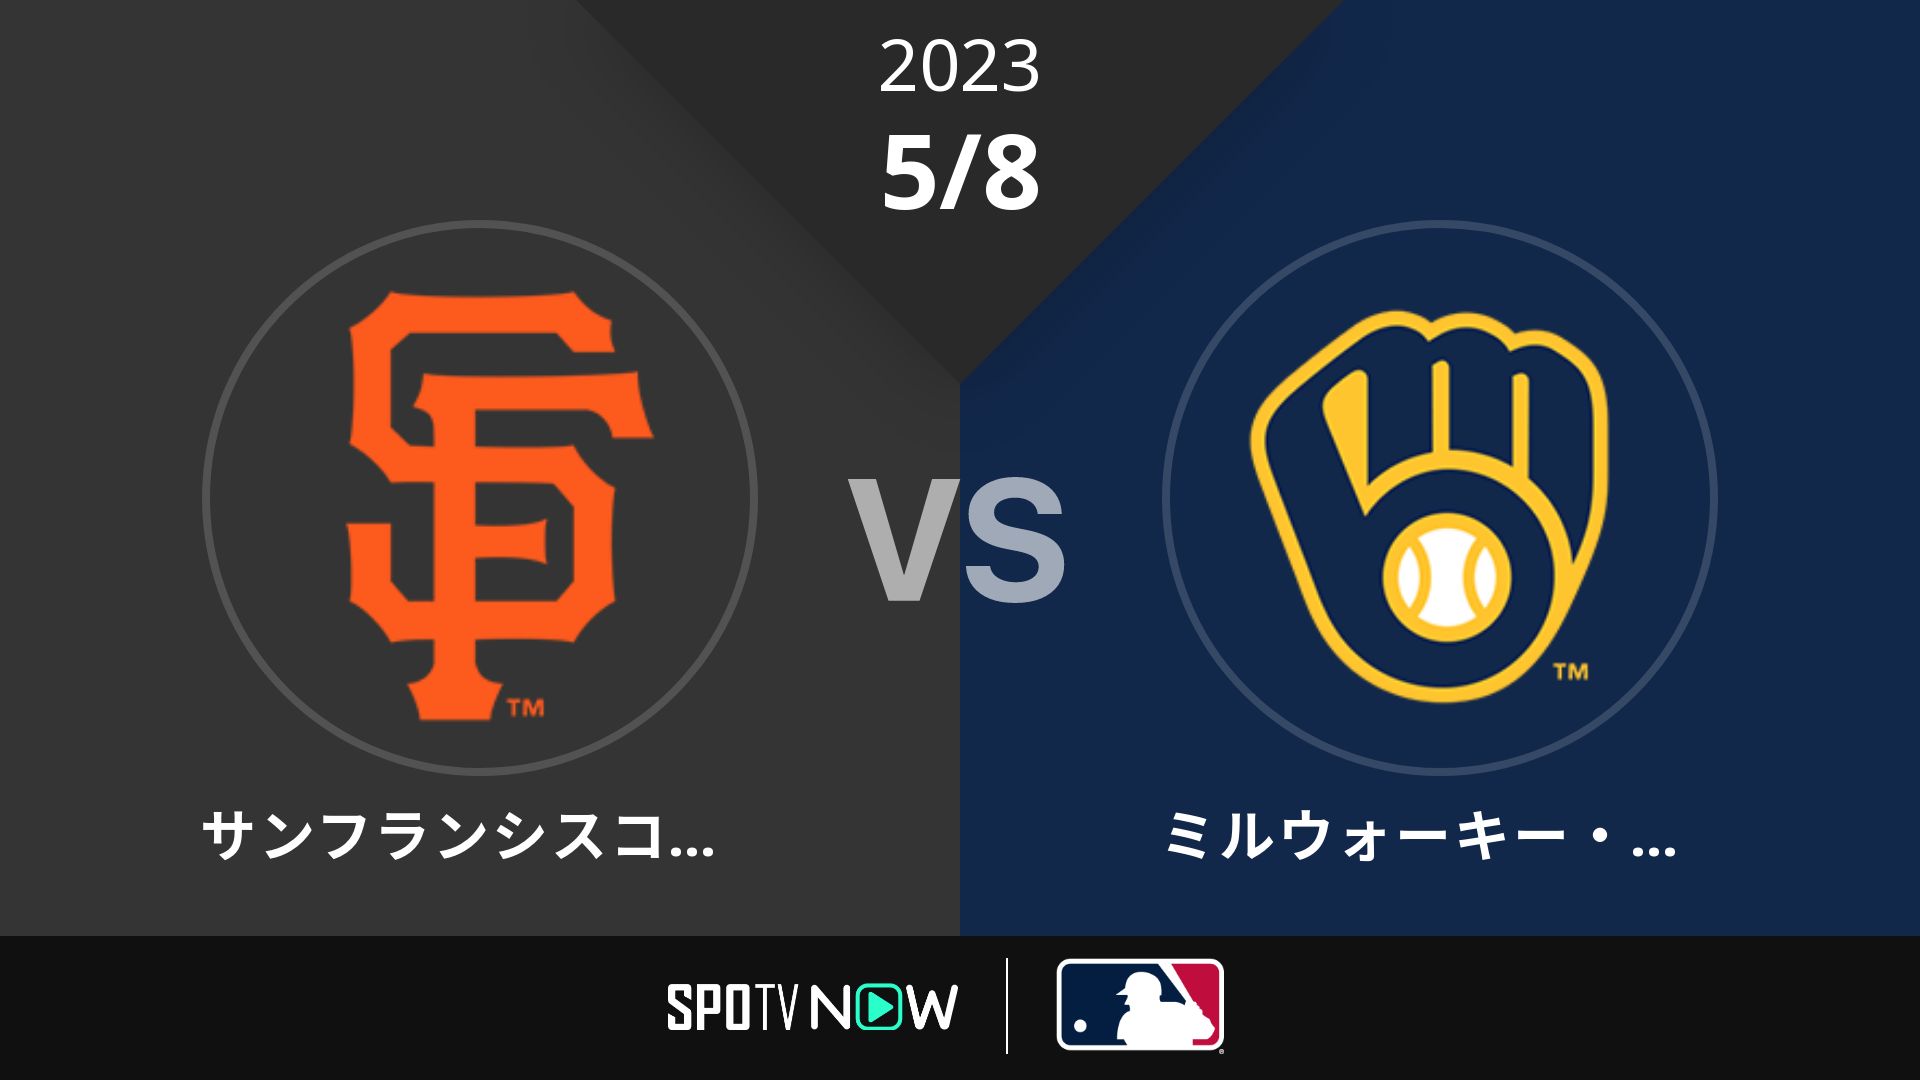 2023/5/8 ジャイアンツ vs ブリュワーズ [MLB]